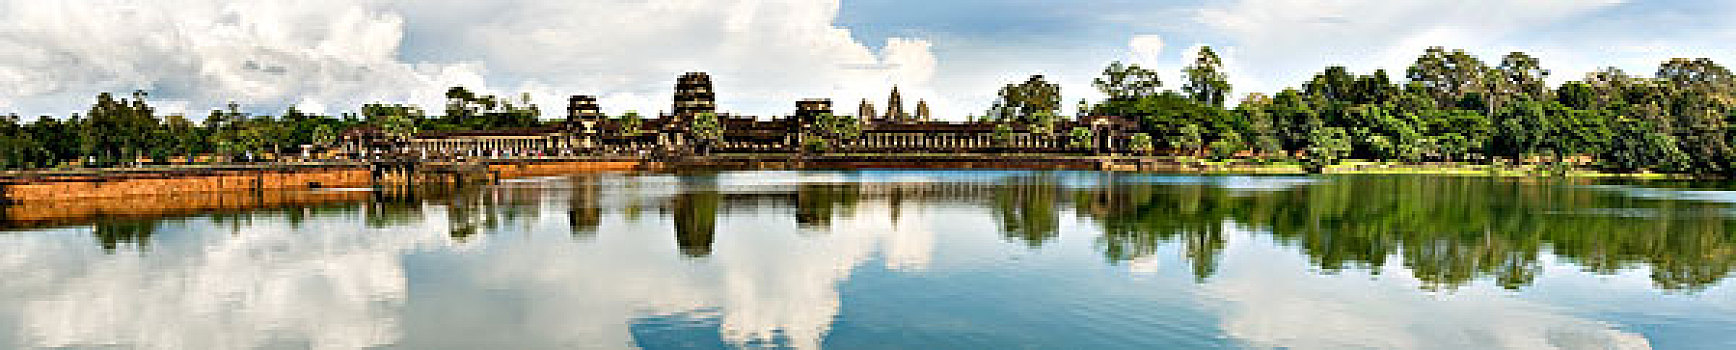 柬埔寨,吴哥窟,全景,图像,护城河,堤道